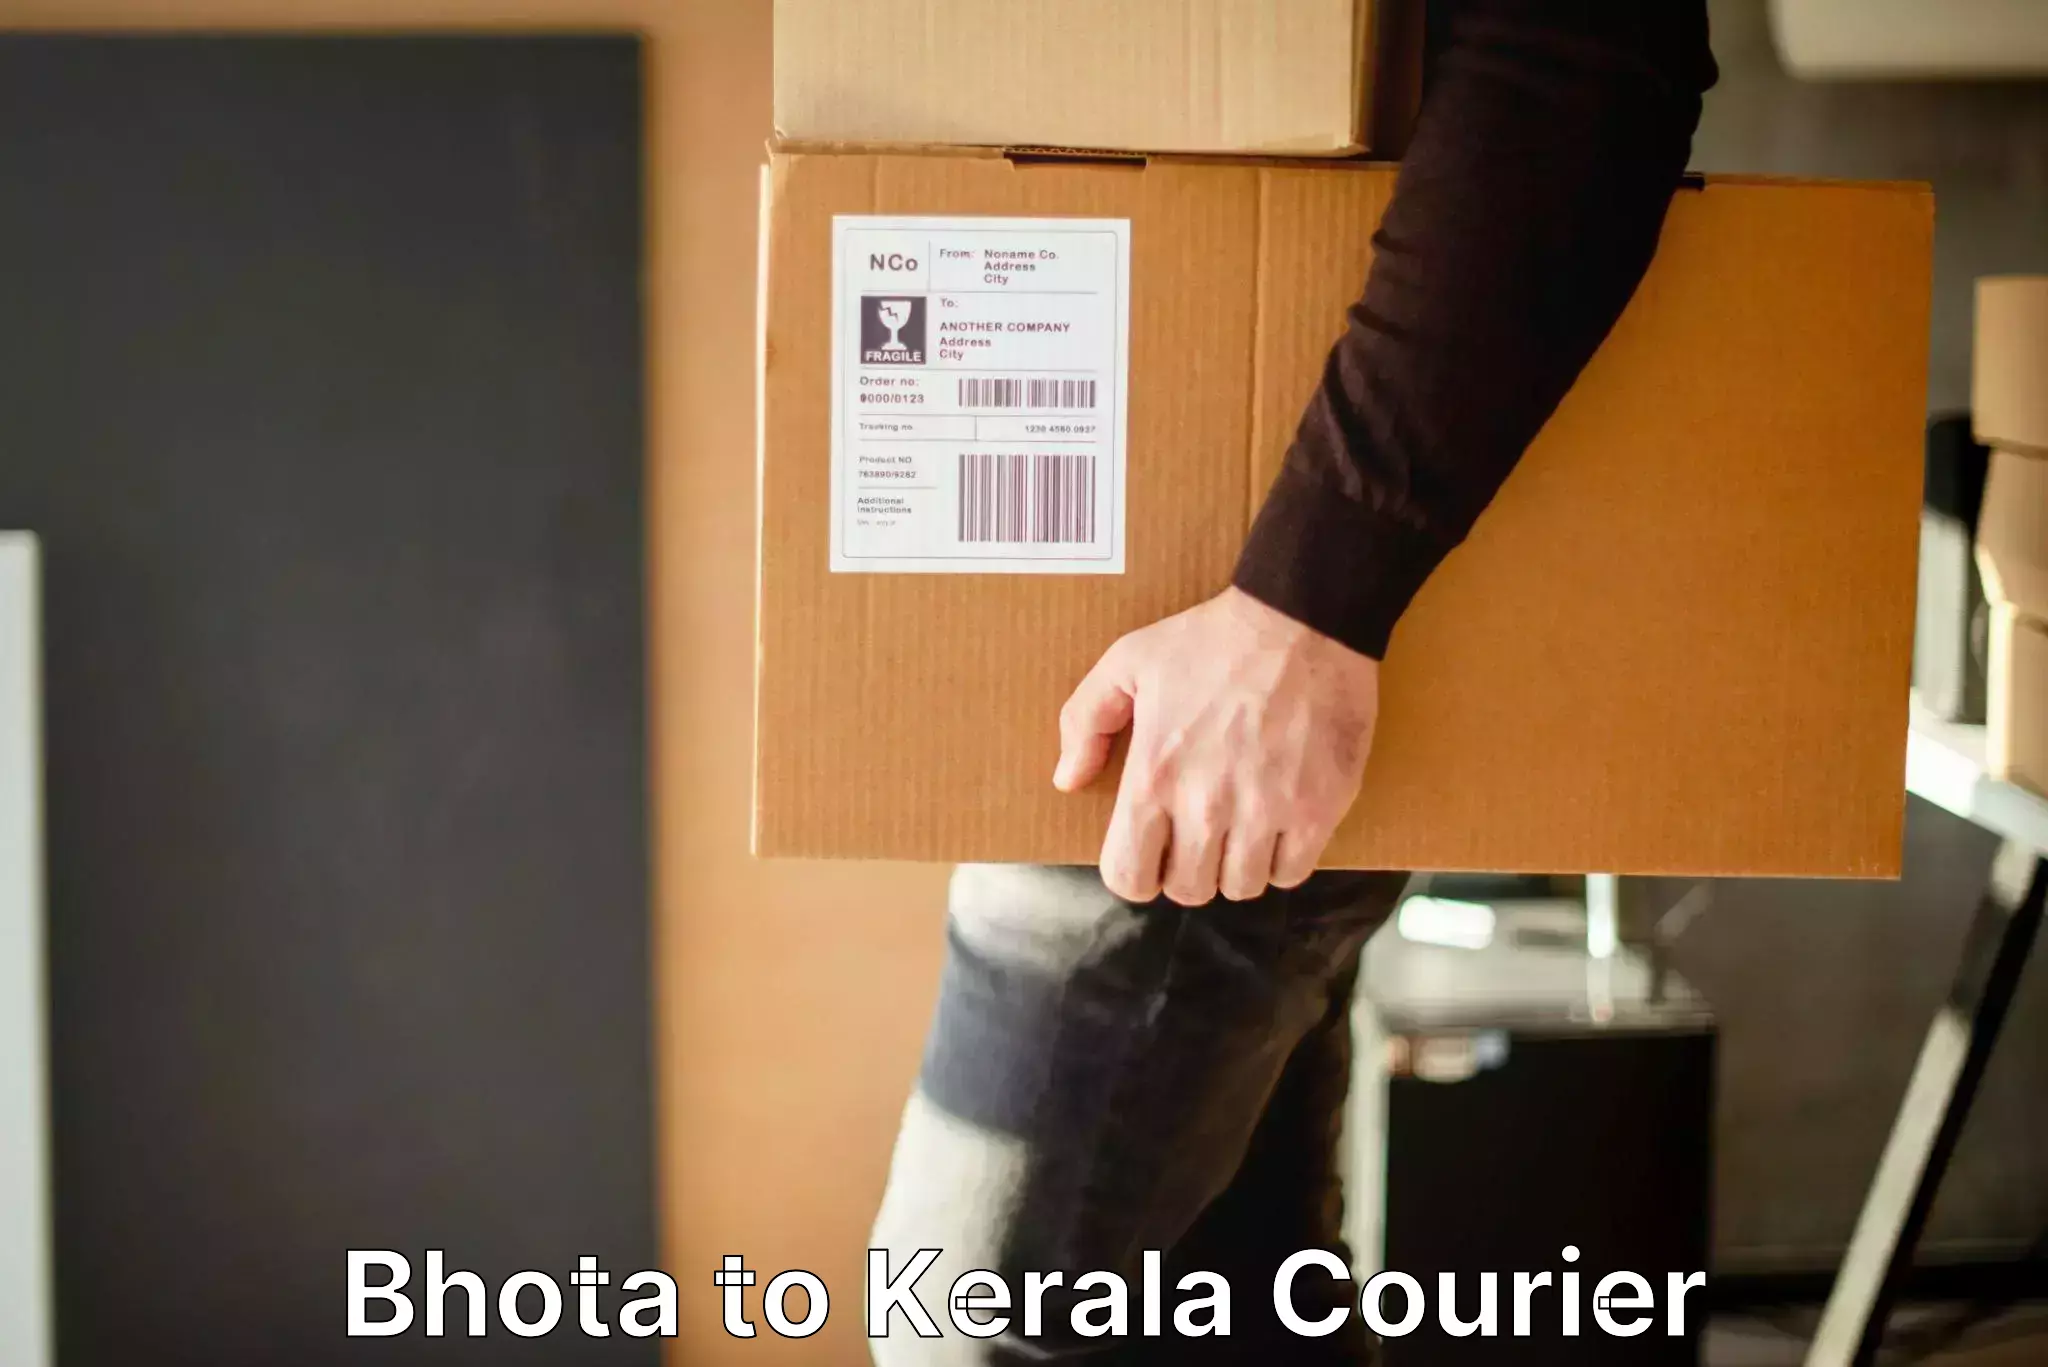 Baggage transport scheduler Bhota to Kerala